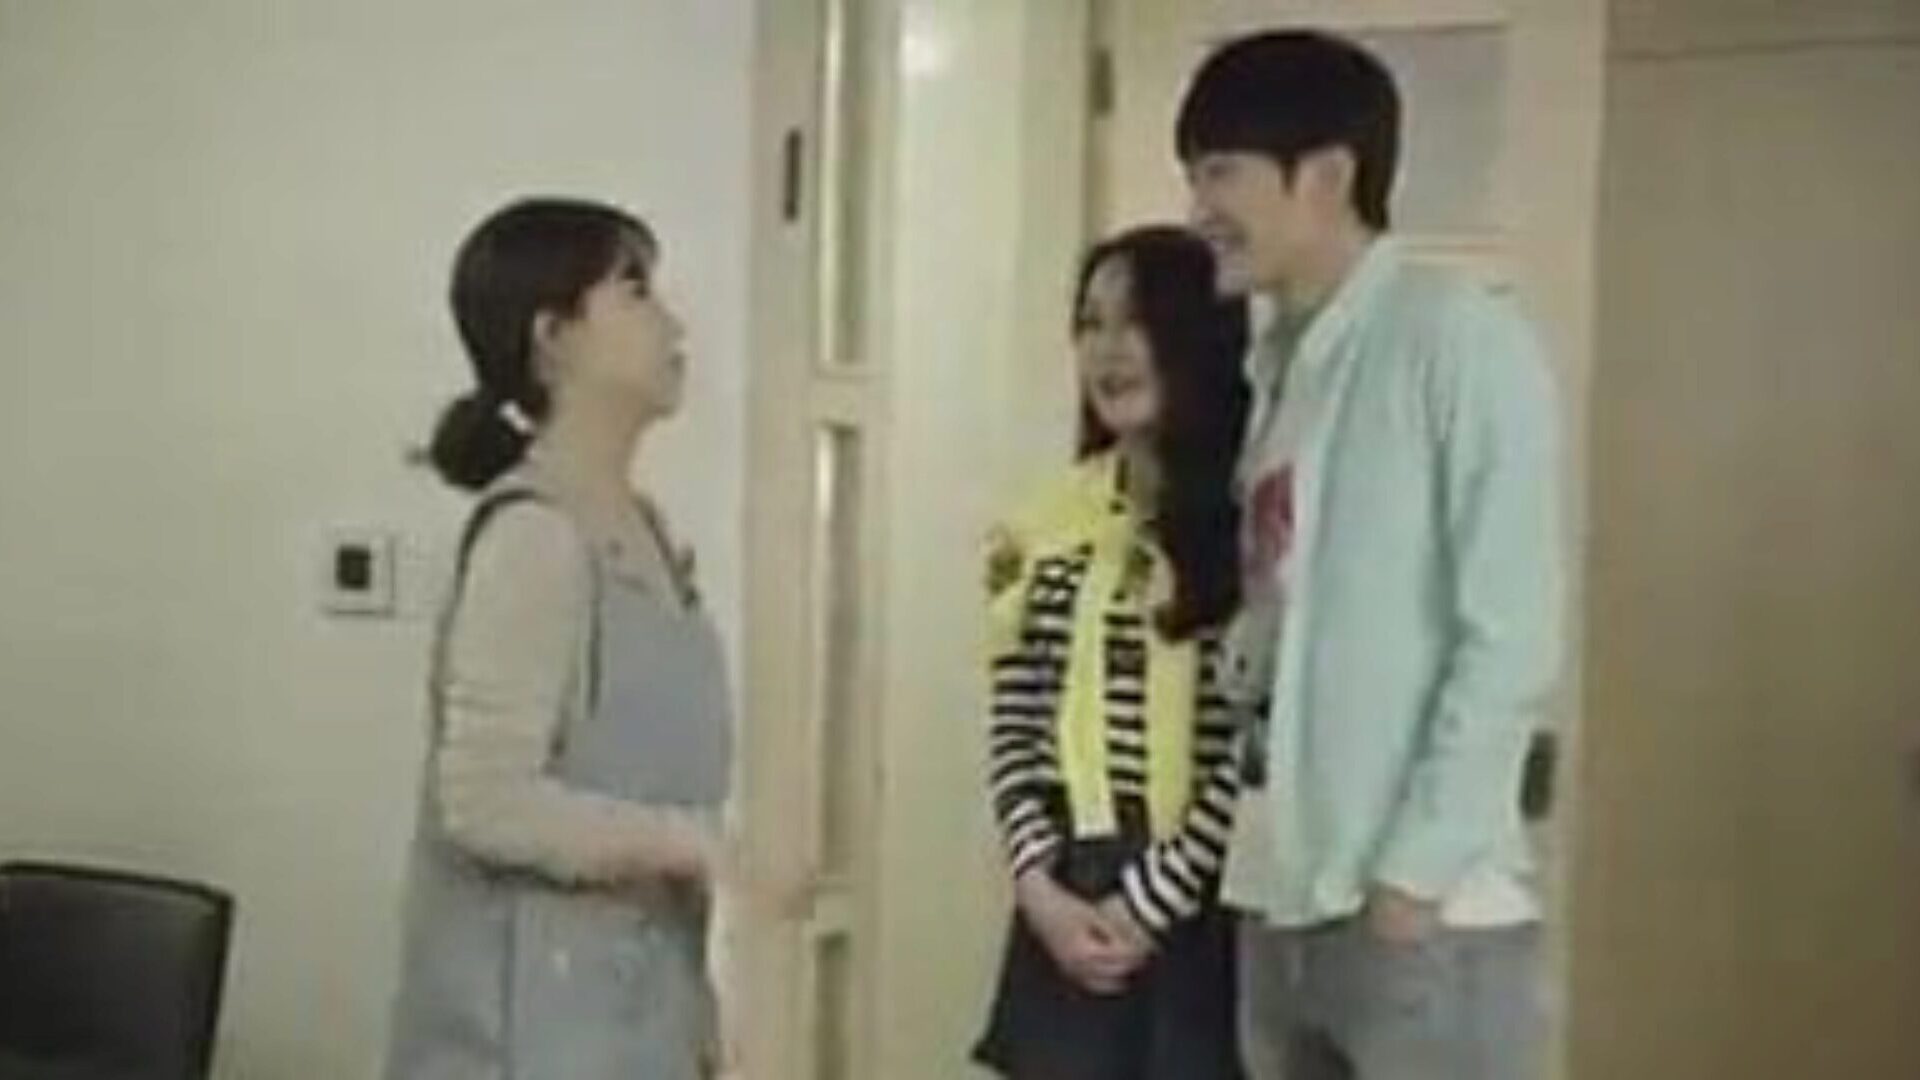 přítel matky a syna šuká v kuchyni - korejský film korejský filmový klip - přítel matky a syna šuká v kuchyni, zatímco zeť bouchá se svým gf v místnosti